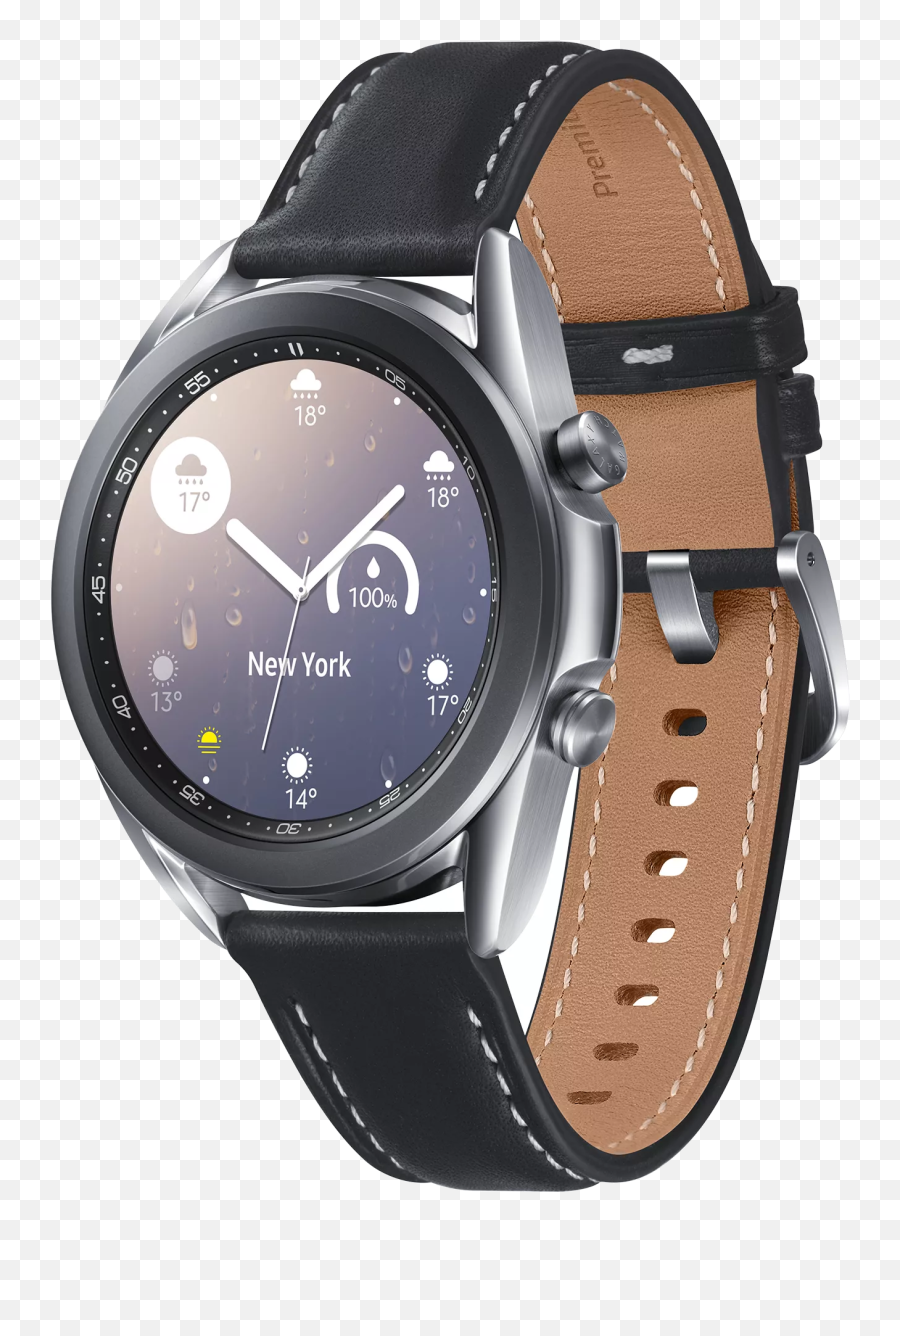 Galaxy Watch3 Mystic Silver - Samsung Galaxy Watch 3 Mystic Silver Emoji,Watch And Clock Emoji Answer